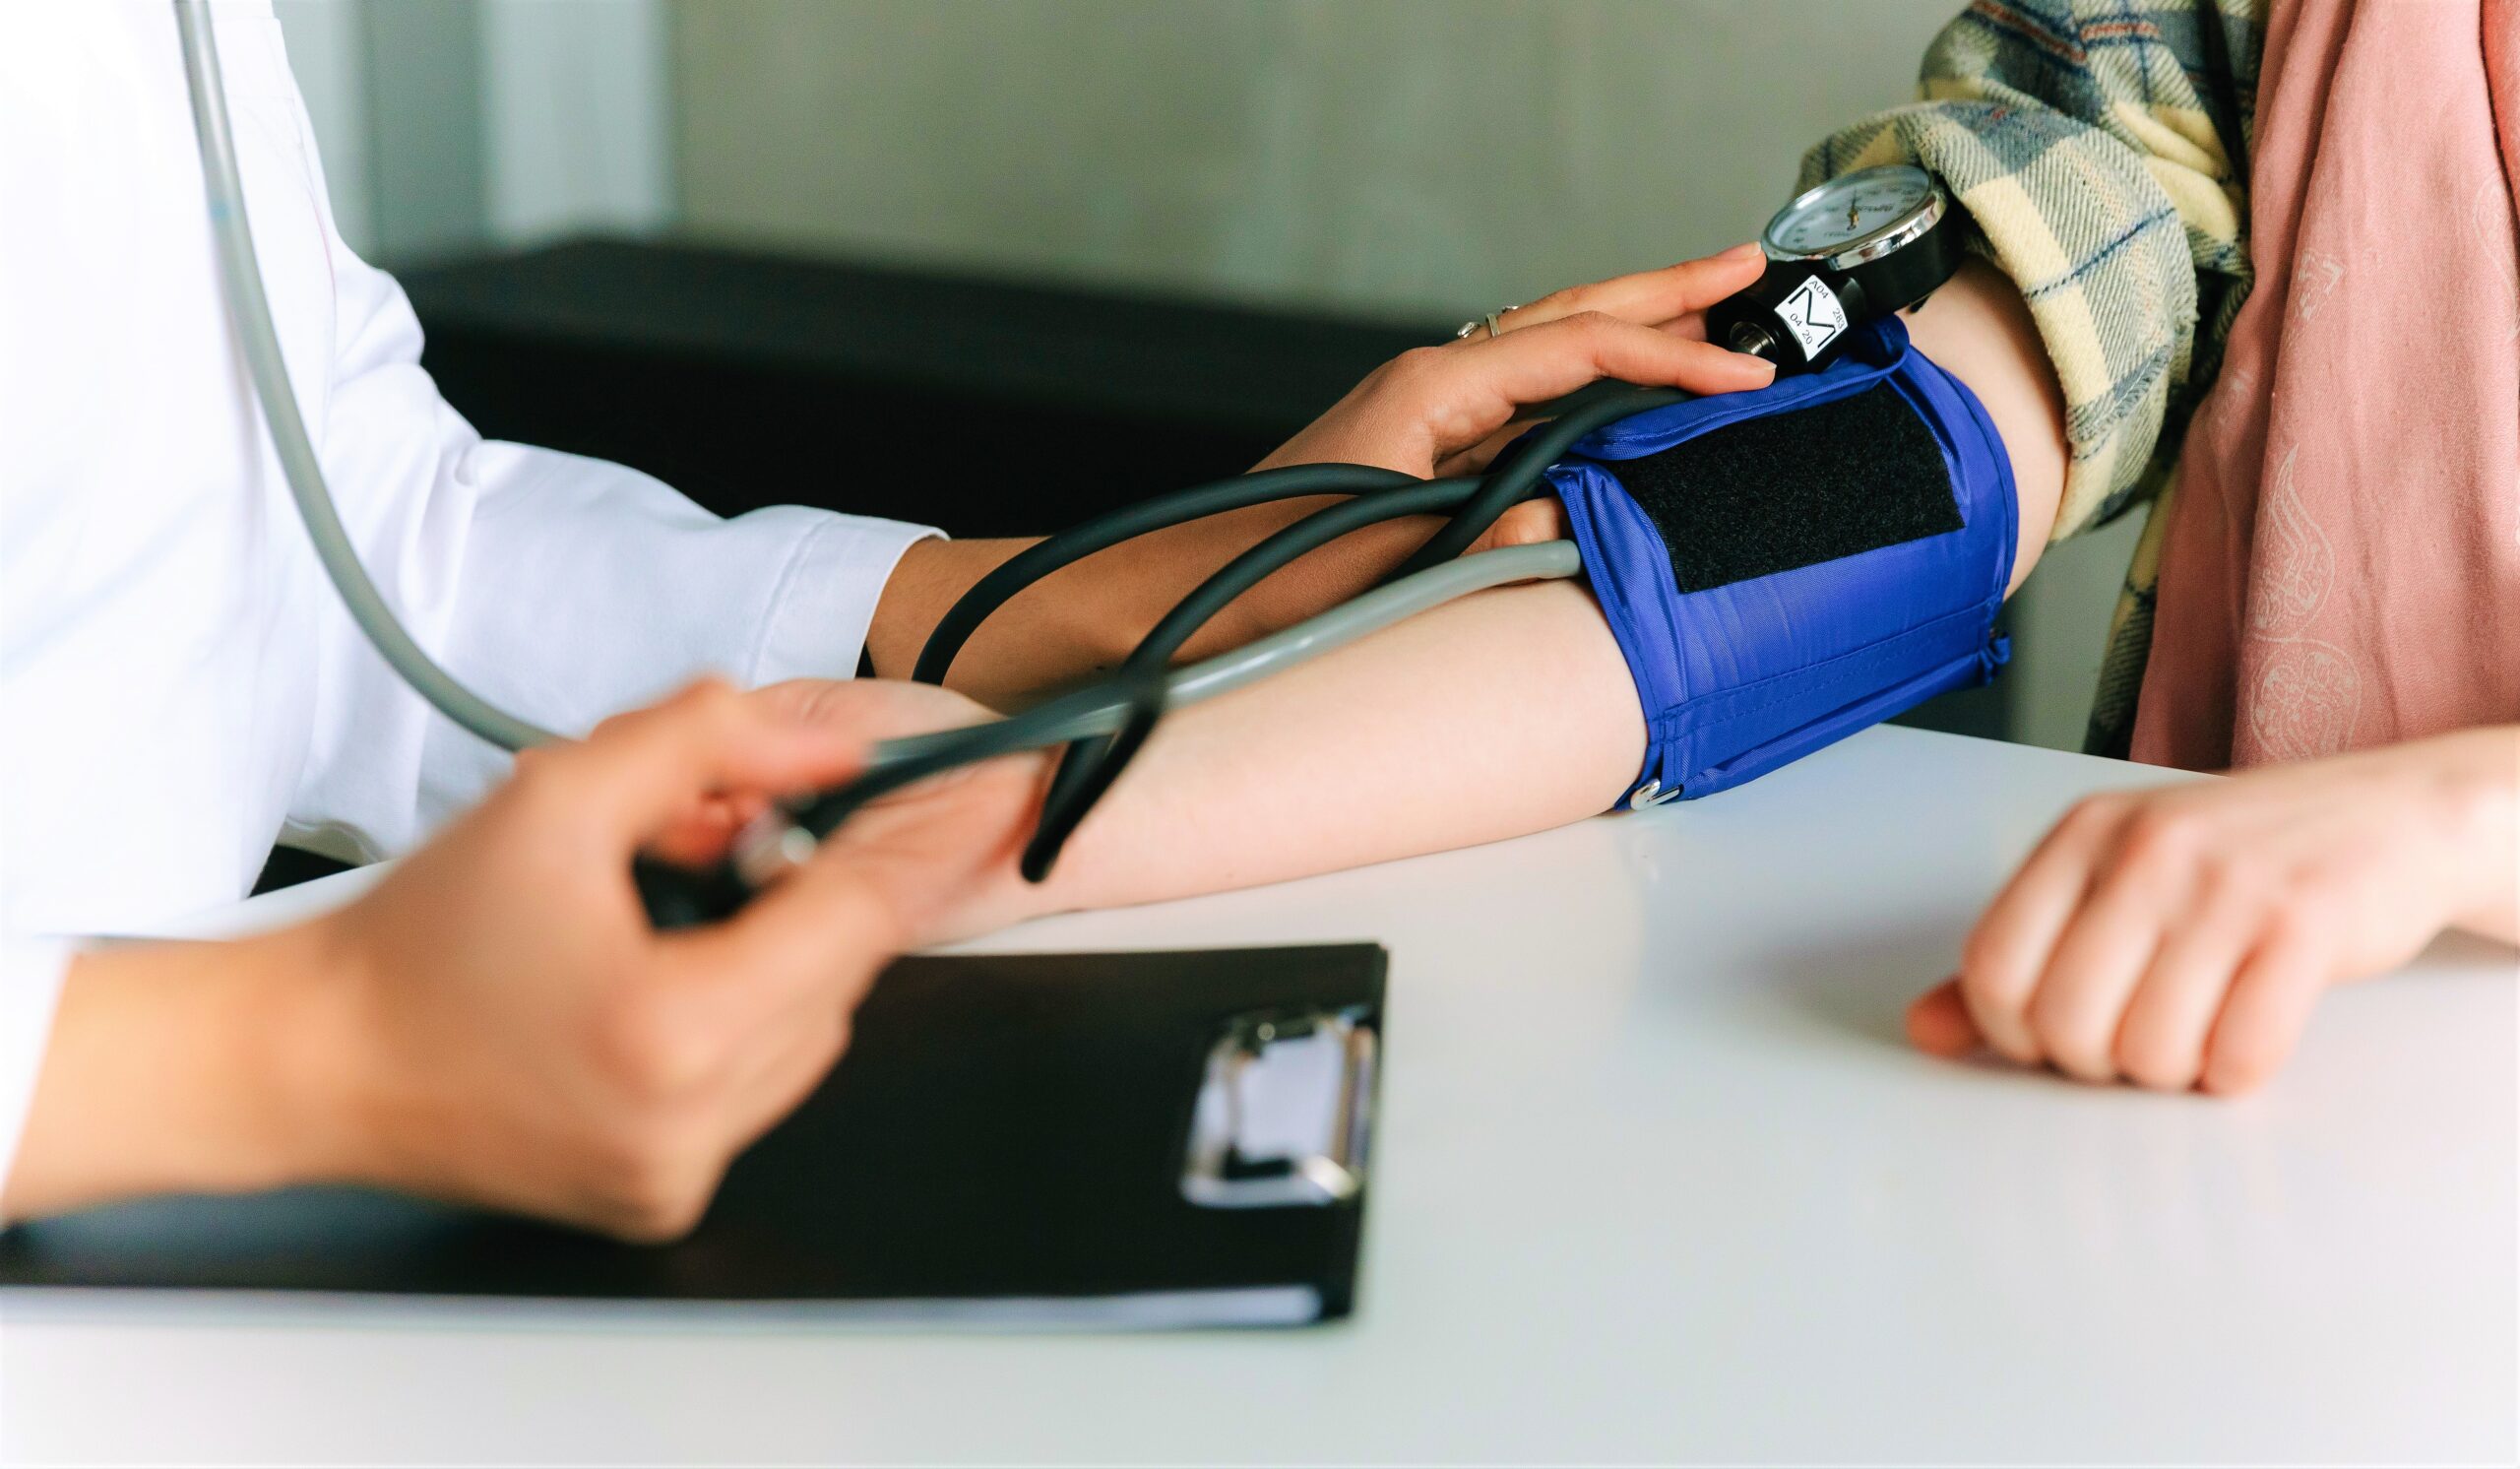 ways to lower blood pressure